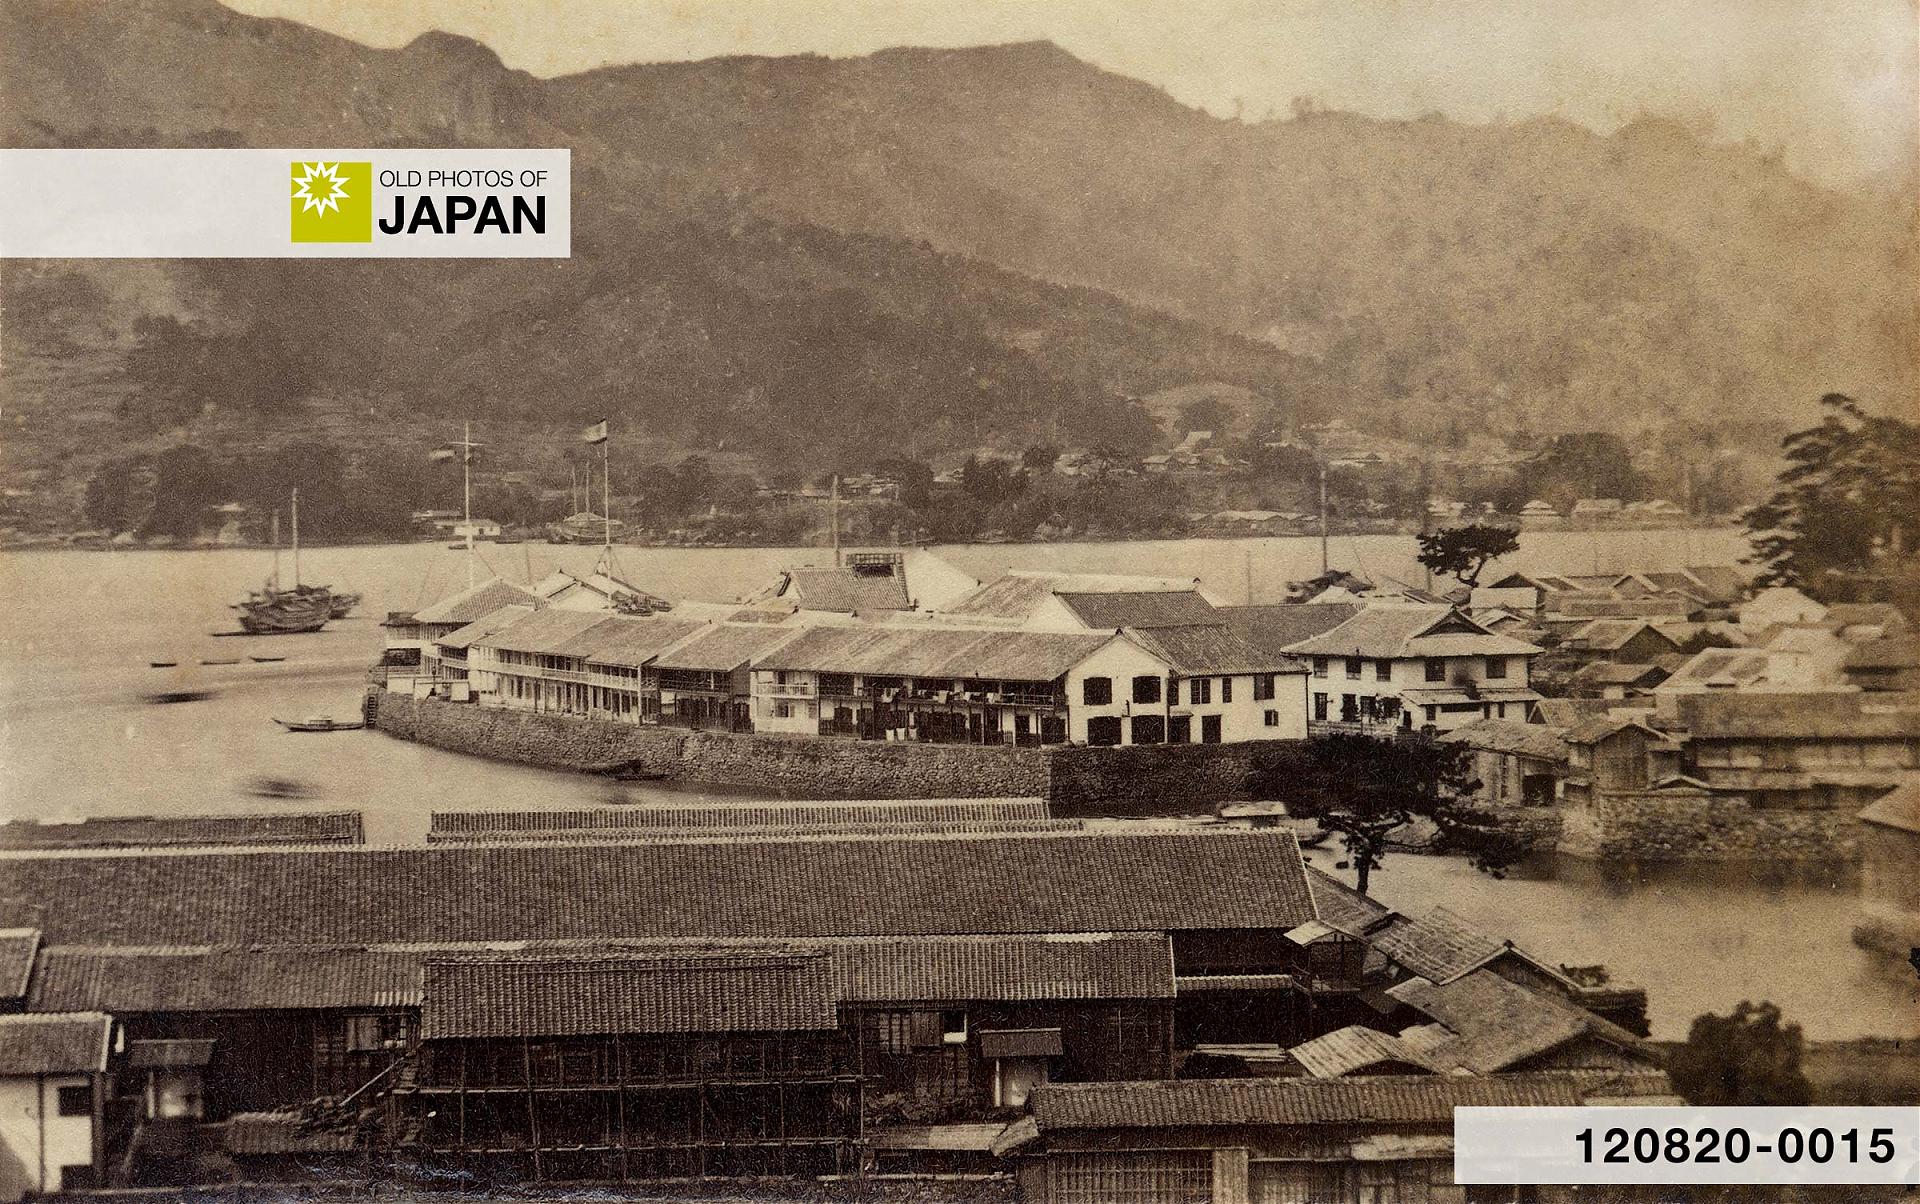 Dejima in 1865